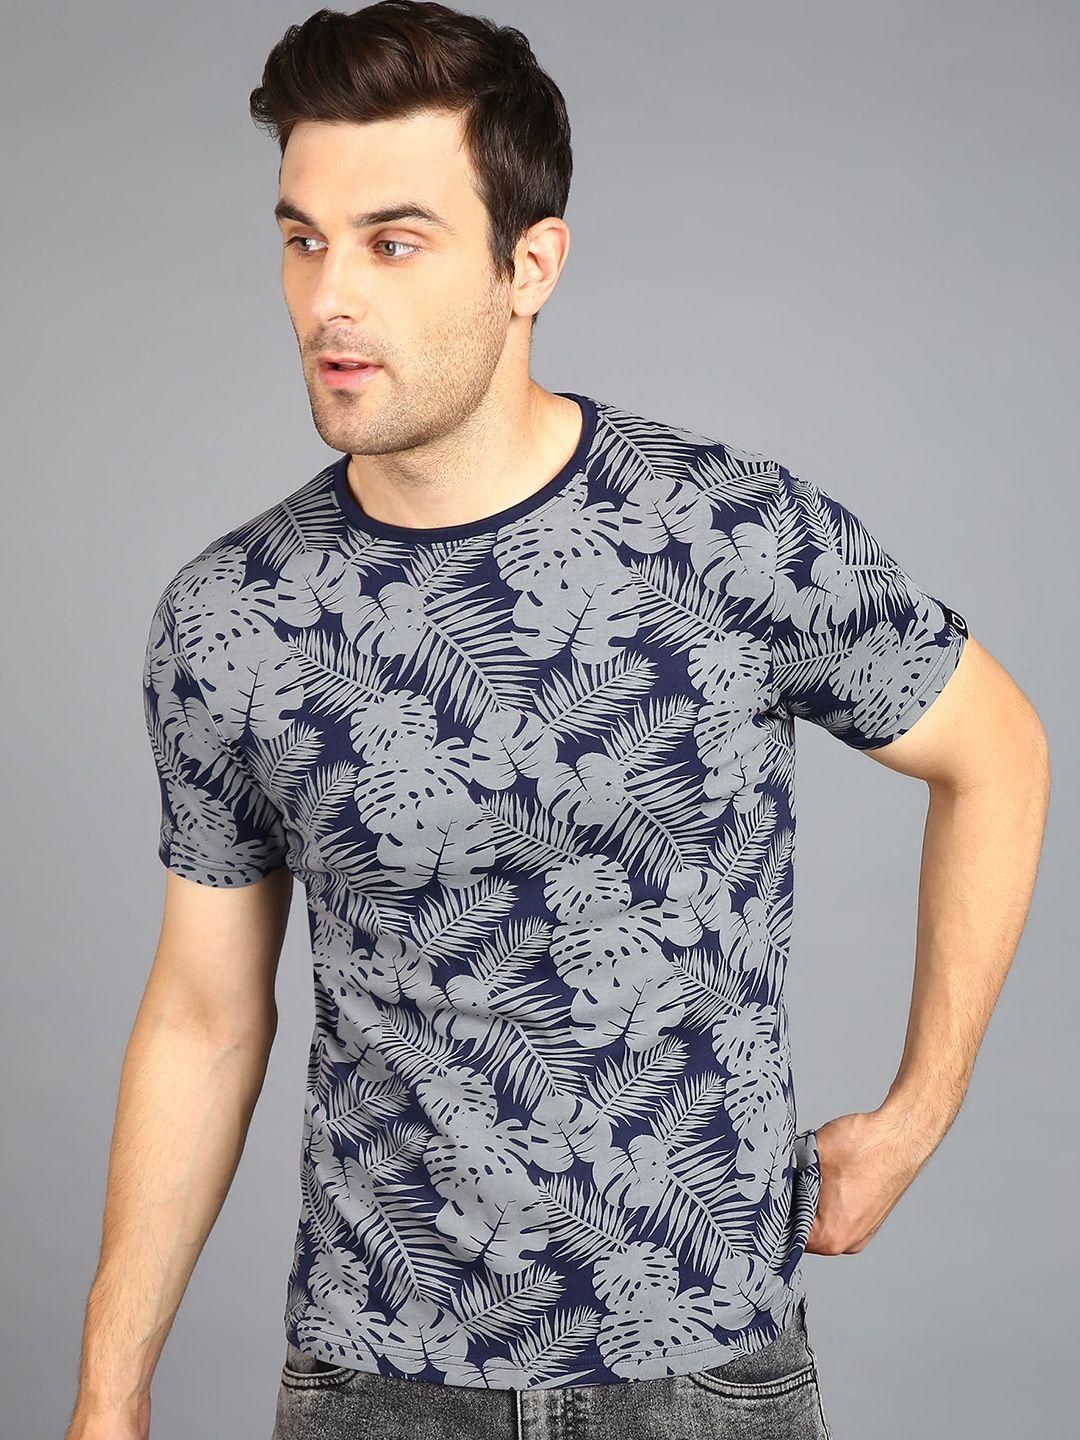 urbano fashion men navy blue floral printed tropical pockets slim fit t-shirt